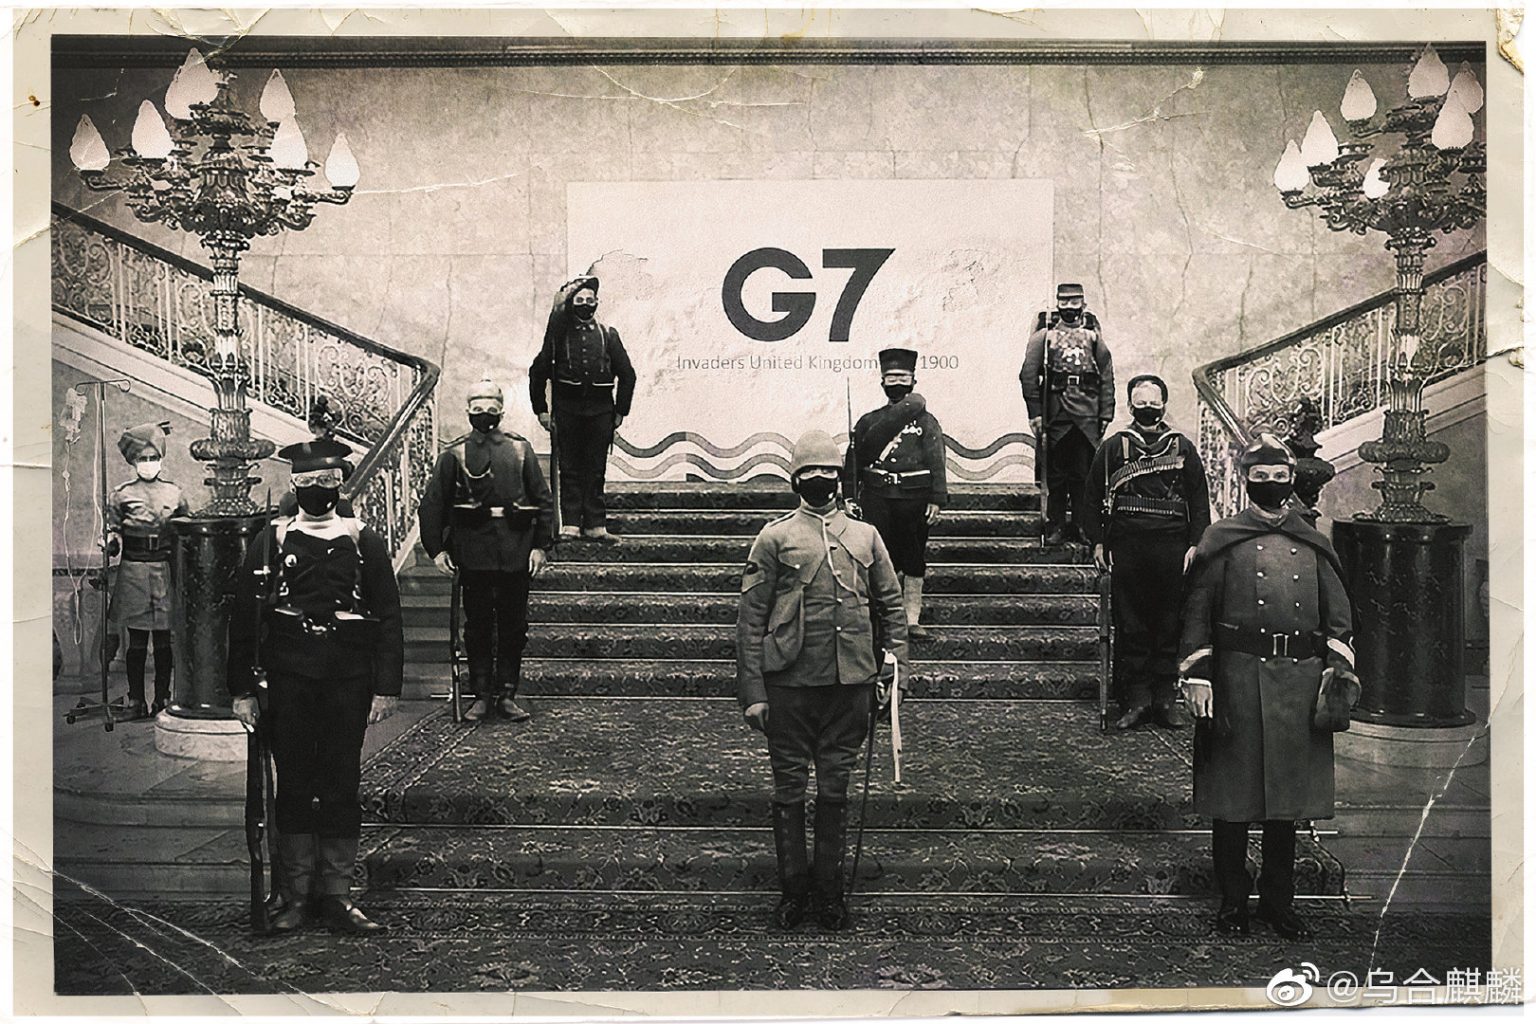 【通常情報戦】中国「戦狼画家」、G7外相らを八カ国連合軍と揶揄　集合写真をパロディ化